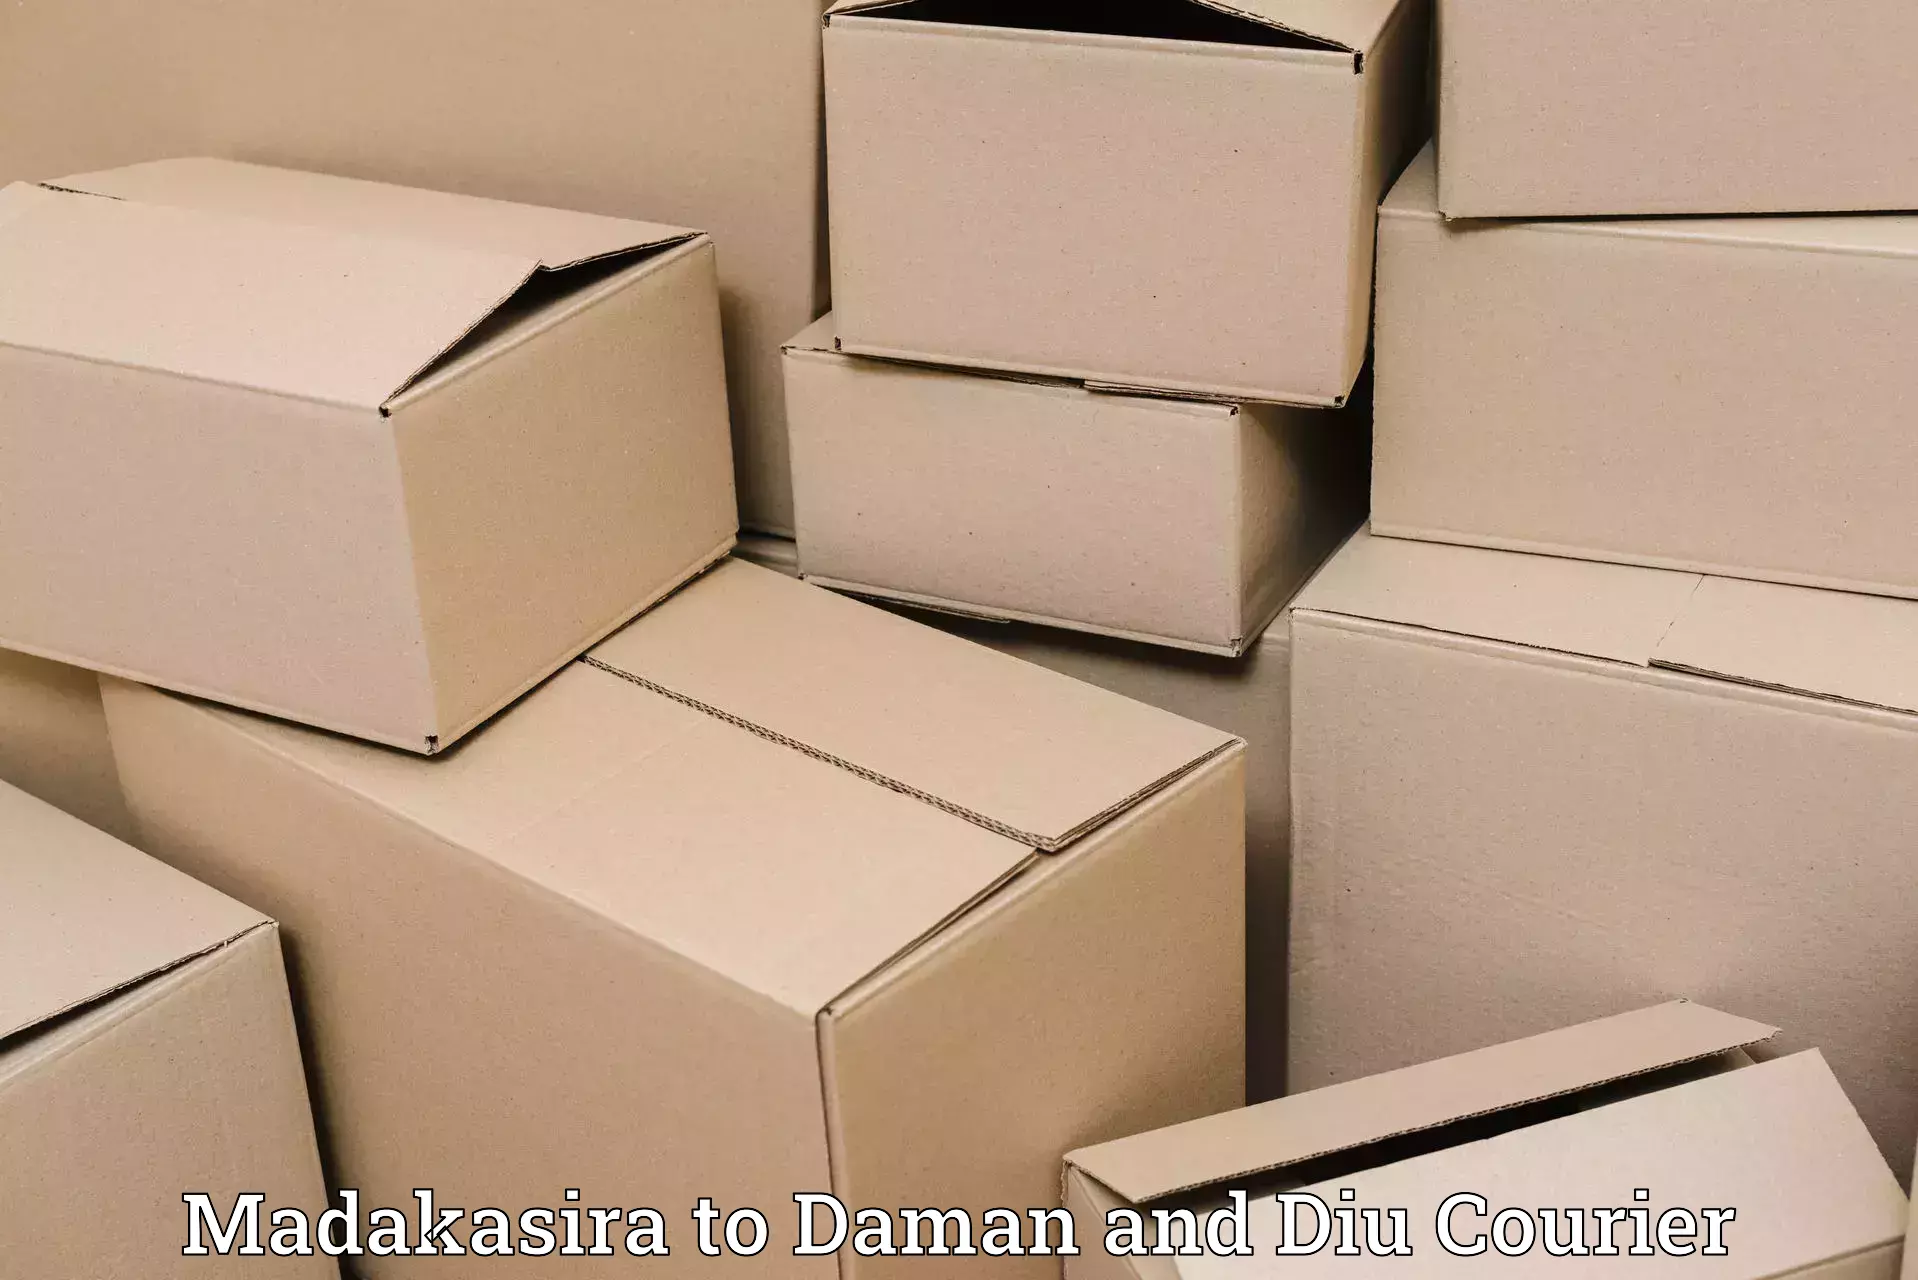 Professional parcel services Madakasira to Daman and Diu